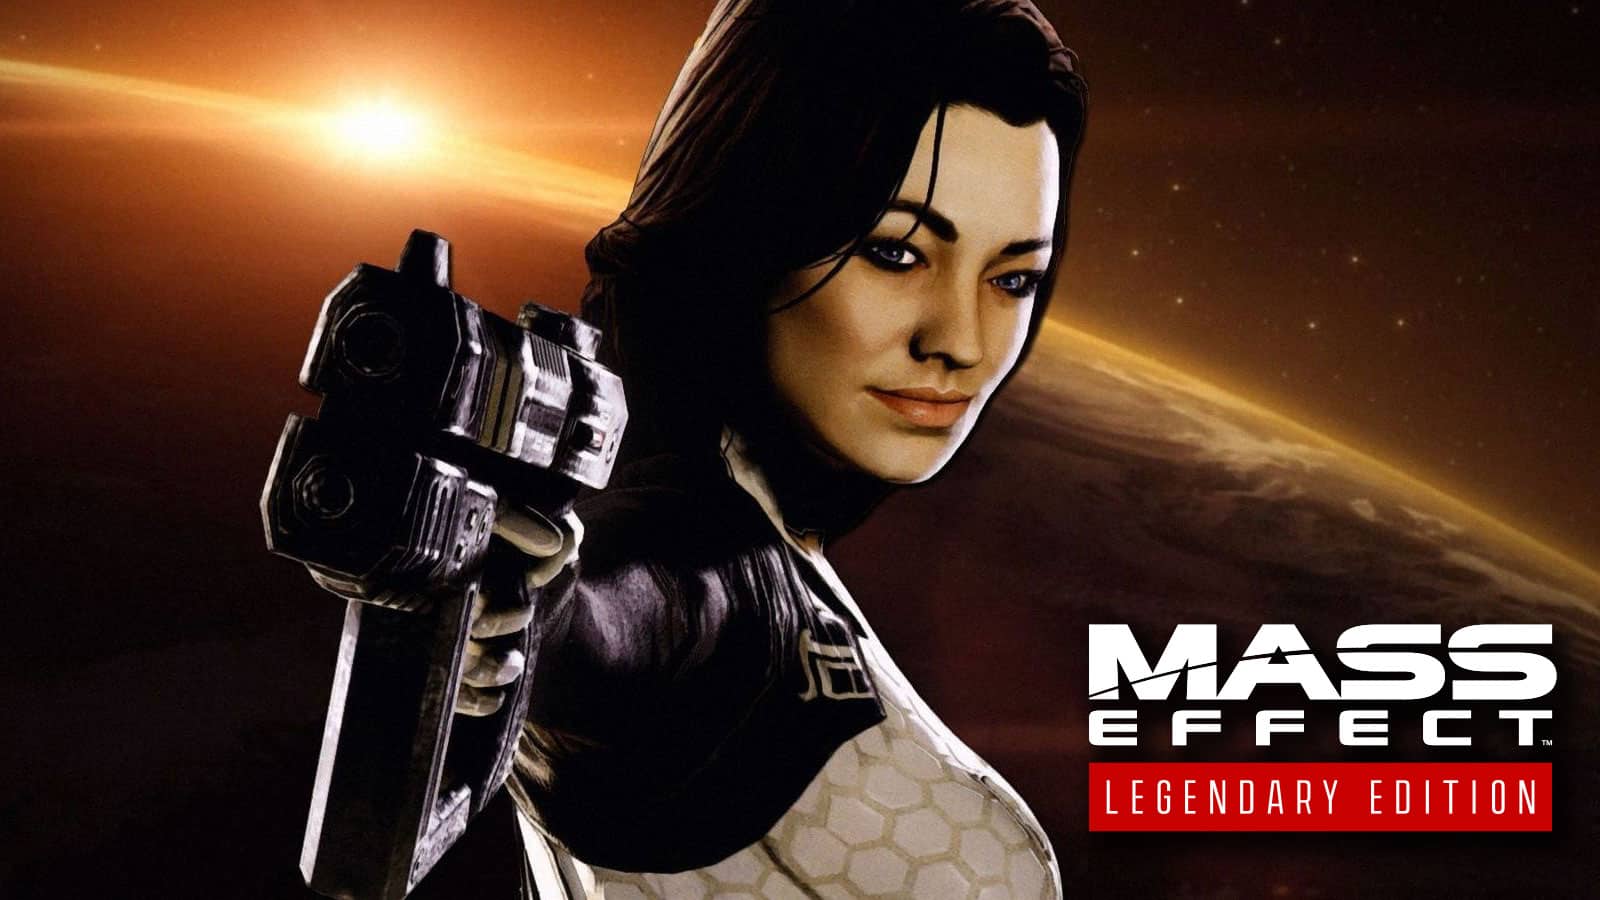 Wallpaper  Mass Effect Legendary Edition video games Commander Shepard  1920x1080  DareDweller  2268986  HD Wallpapers  WallHere